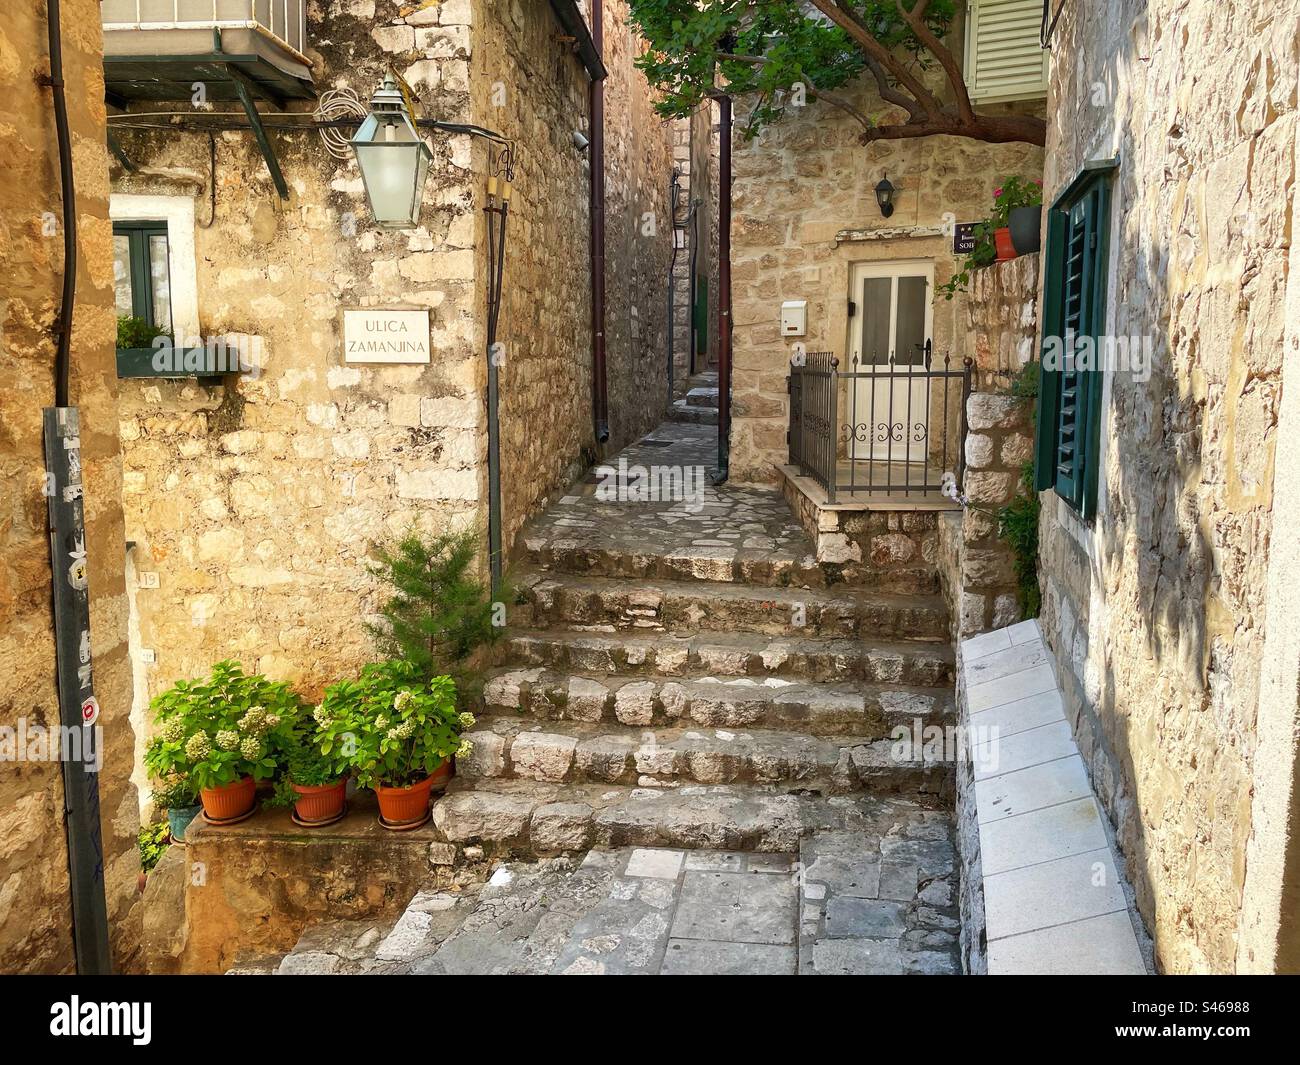 Eine ruhige Ecke der Altstadt von Dubrovnik - Ulica Zamanjina mit typischen Treppen und schmaler Gasse. Stockfoto